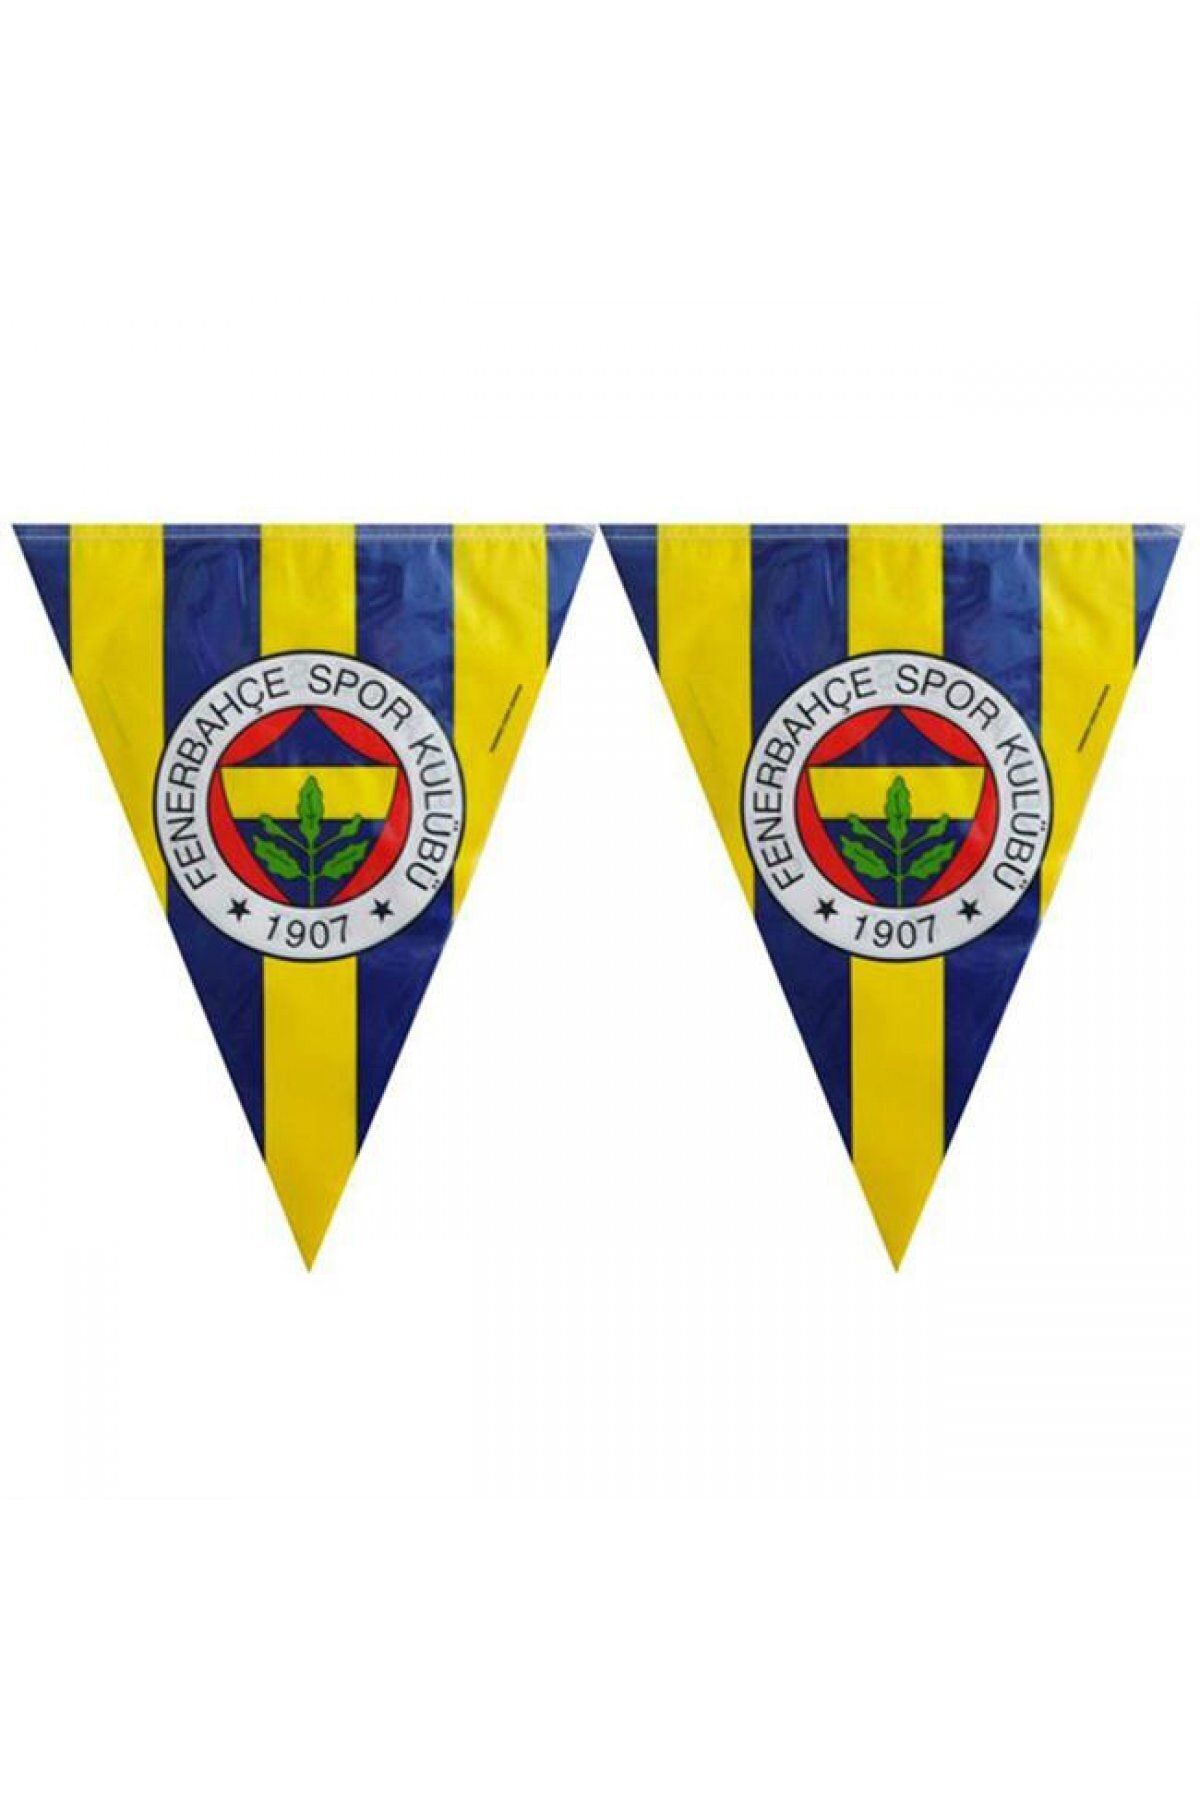 Hayaller Dükkanı Fenerbahçe Üçgen Bayrak Seti Parti Malzemesi-